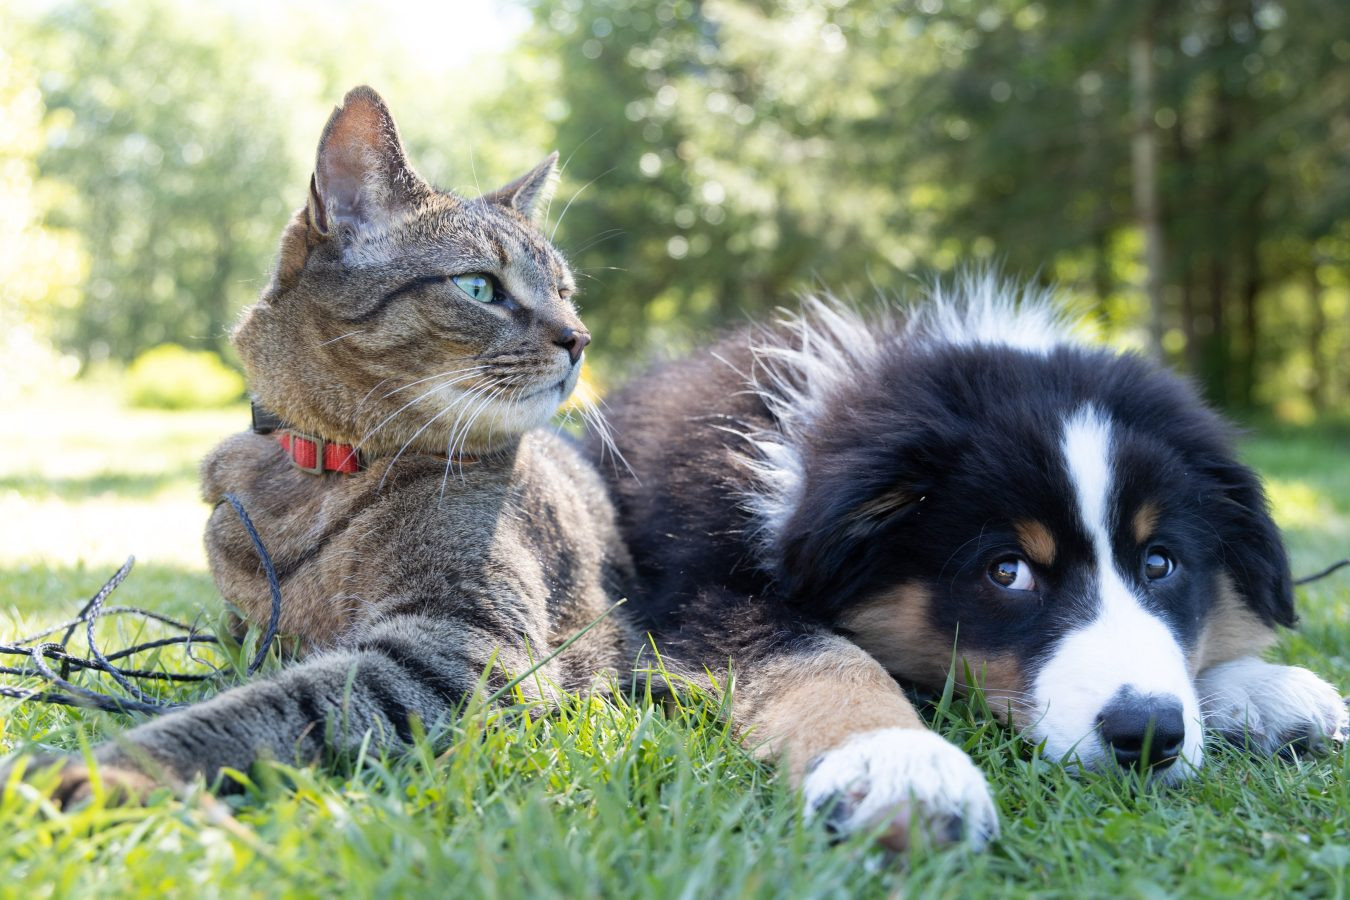 Kedi ve köpeklerde hastalıklar neden arttı?